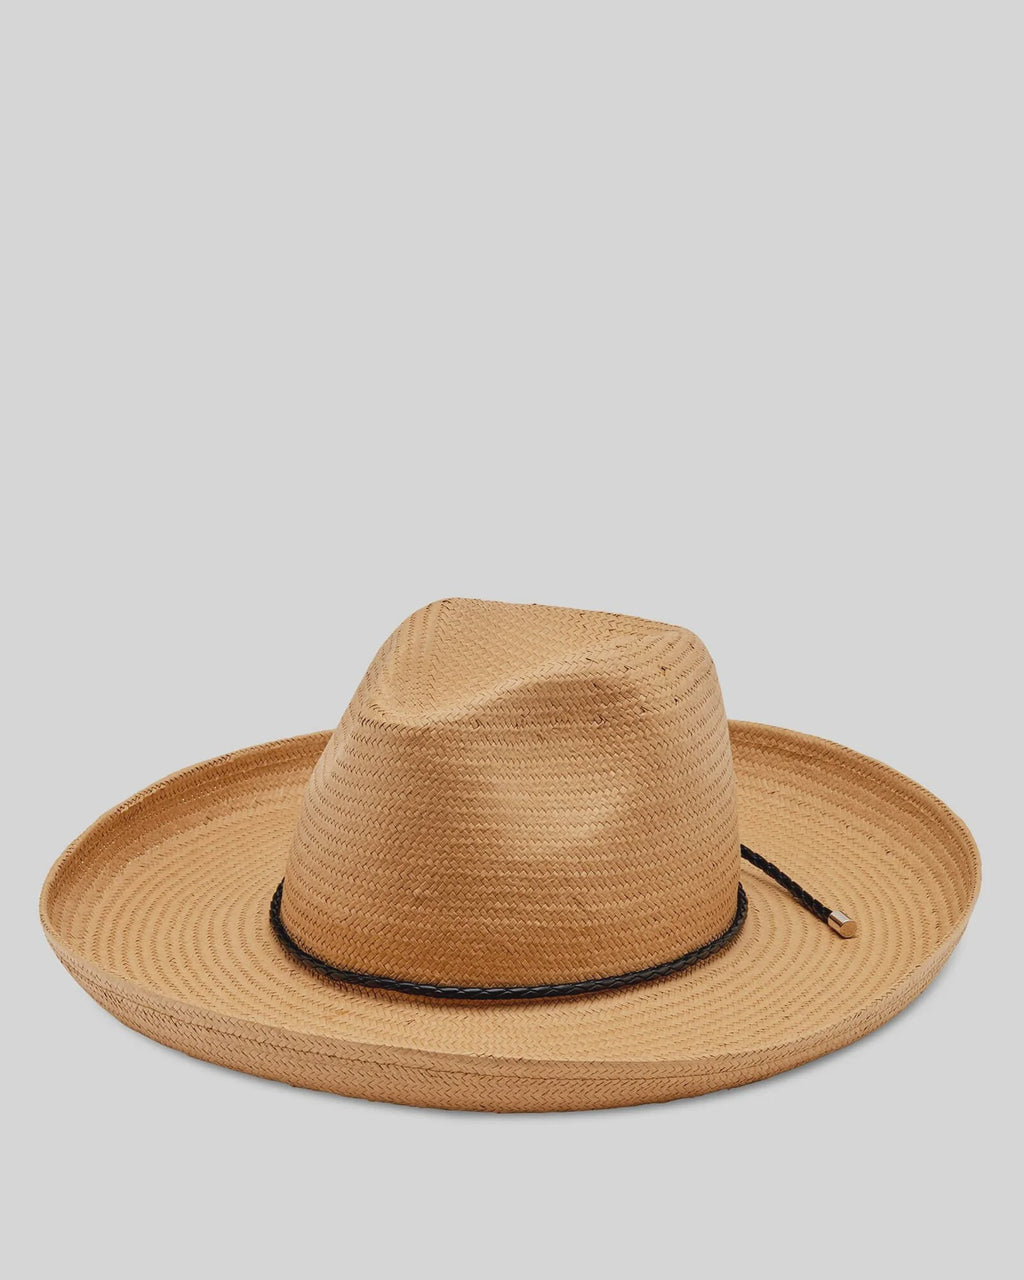 Cancun Plait Band Hat